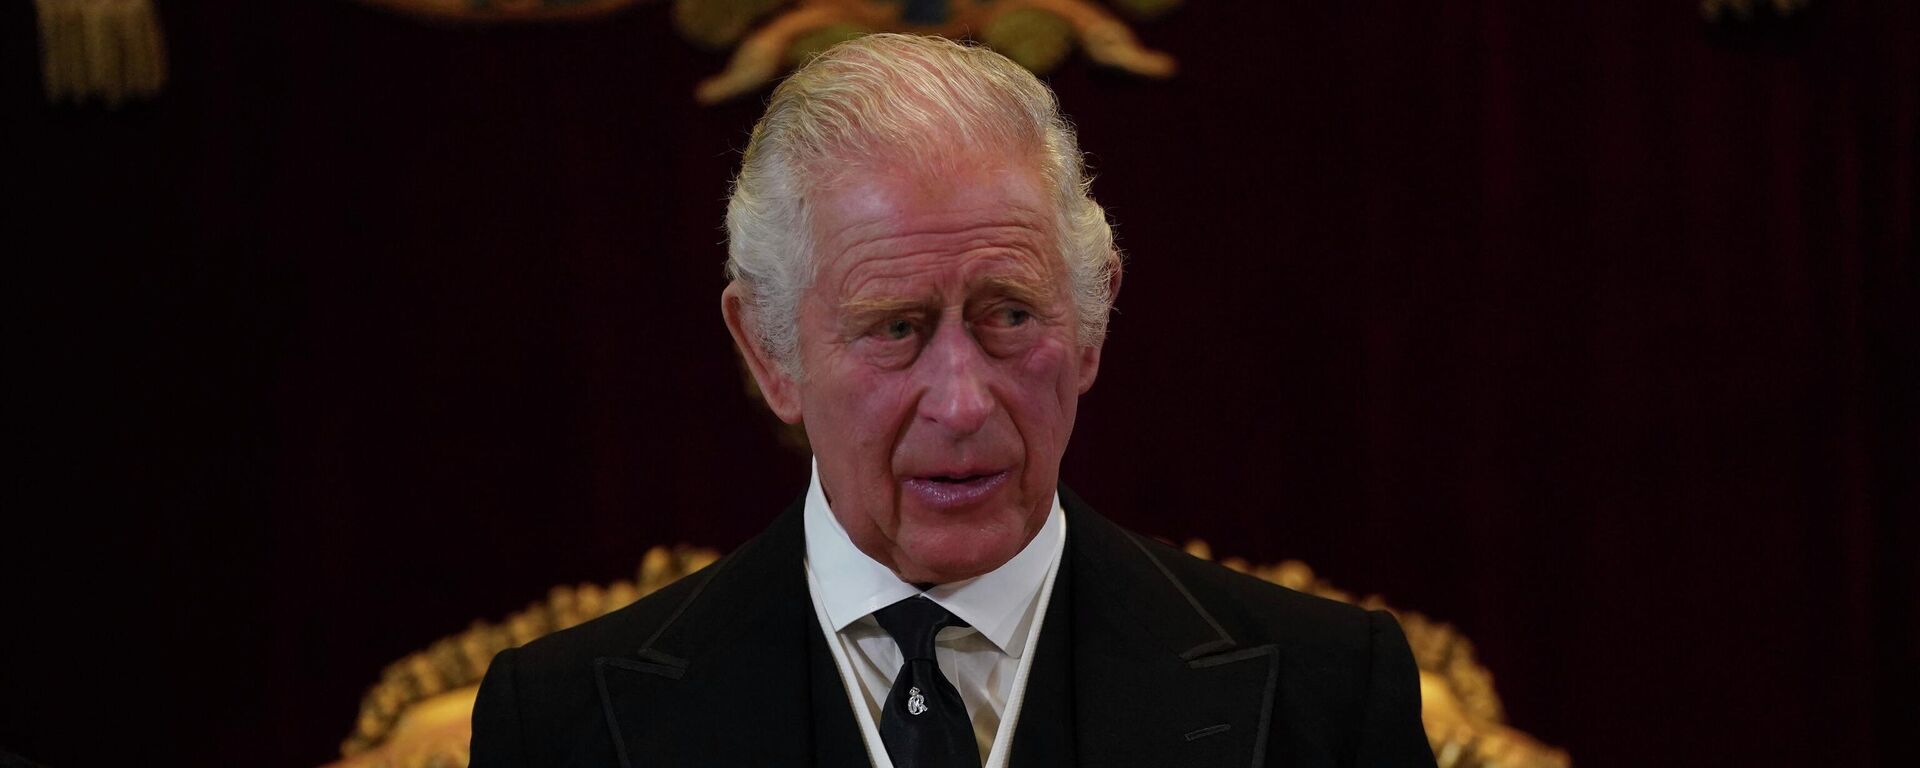 Rei Charles III durante o Conselho de Ascensão ao trono, no Palácio de St. James, em Londres, em 10 de setembro de 2022, sendo formalmente proclamado rei - Sputnik Brasil, 1920, 11.09.2022